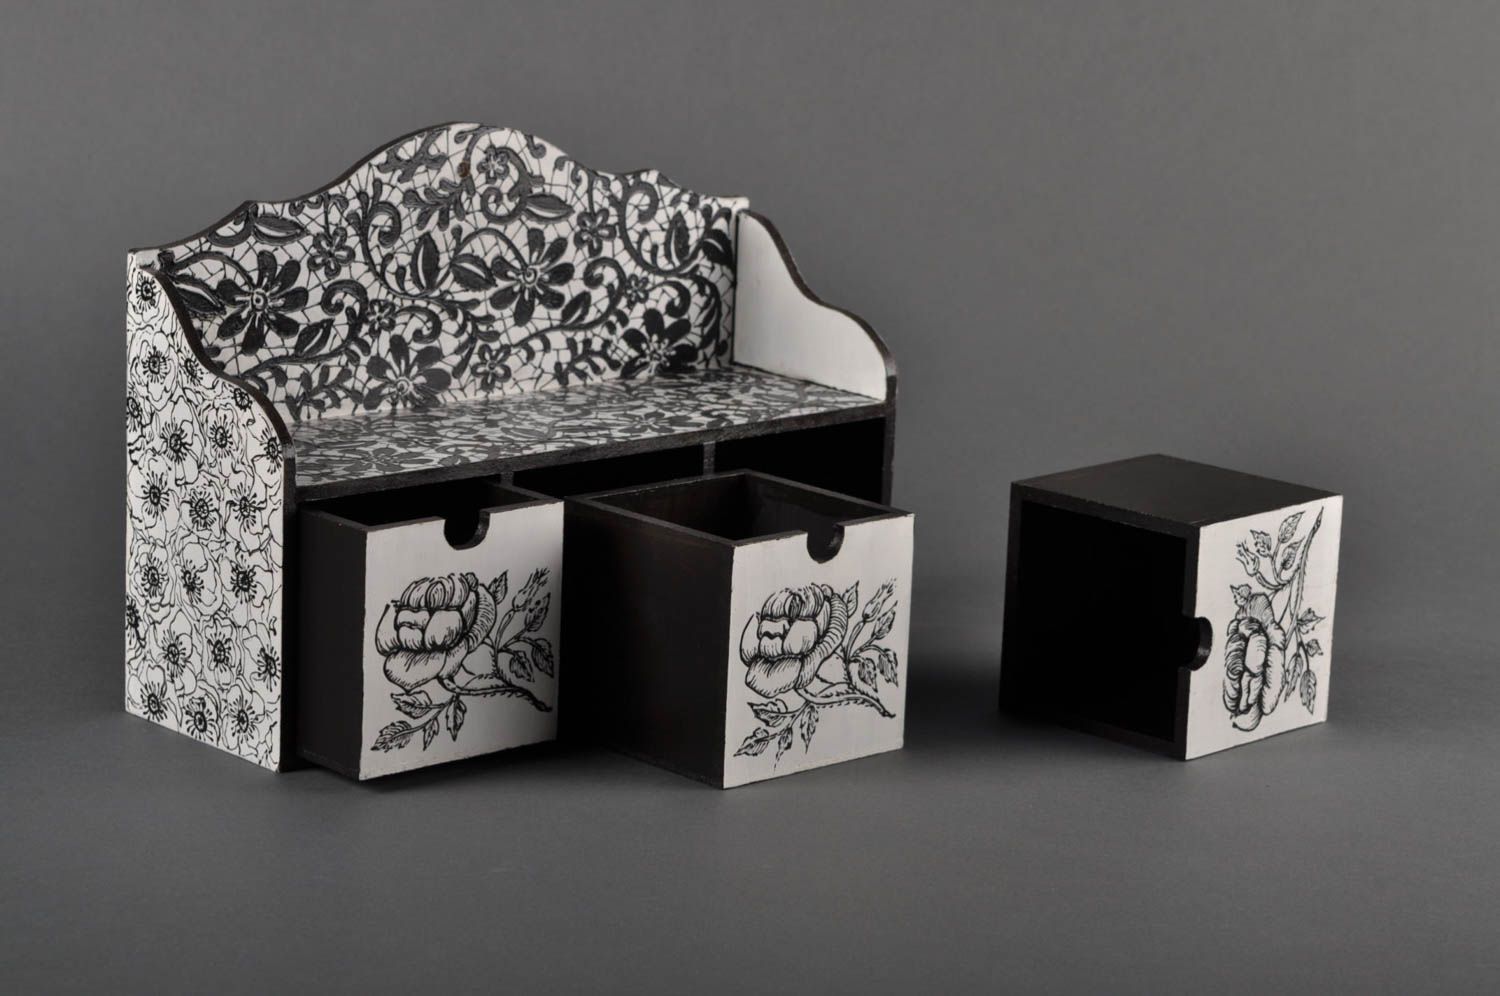 Шкатулка ручной работы мини-комод деревянная шкатулка черно-белая с орнаментом фото 2